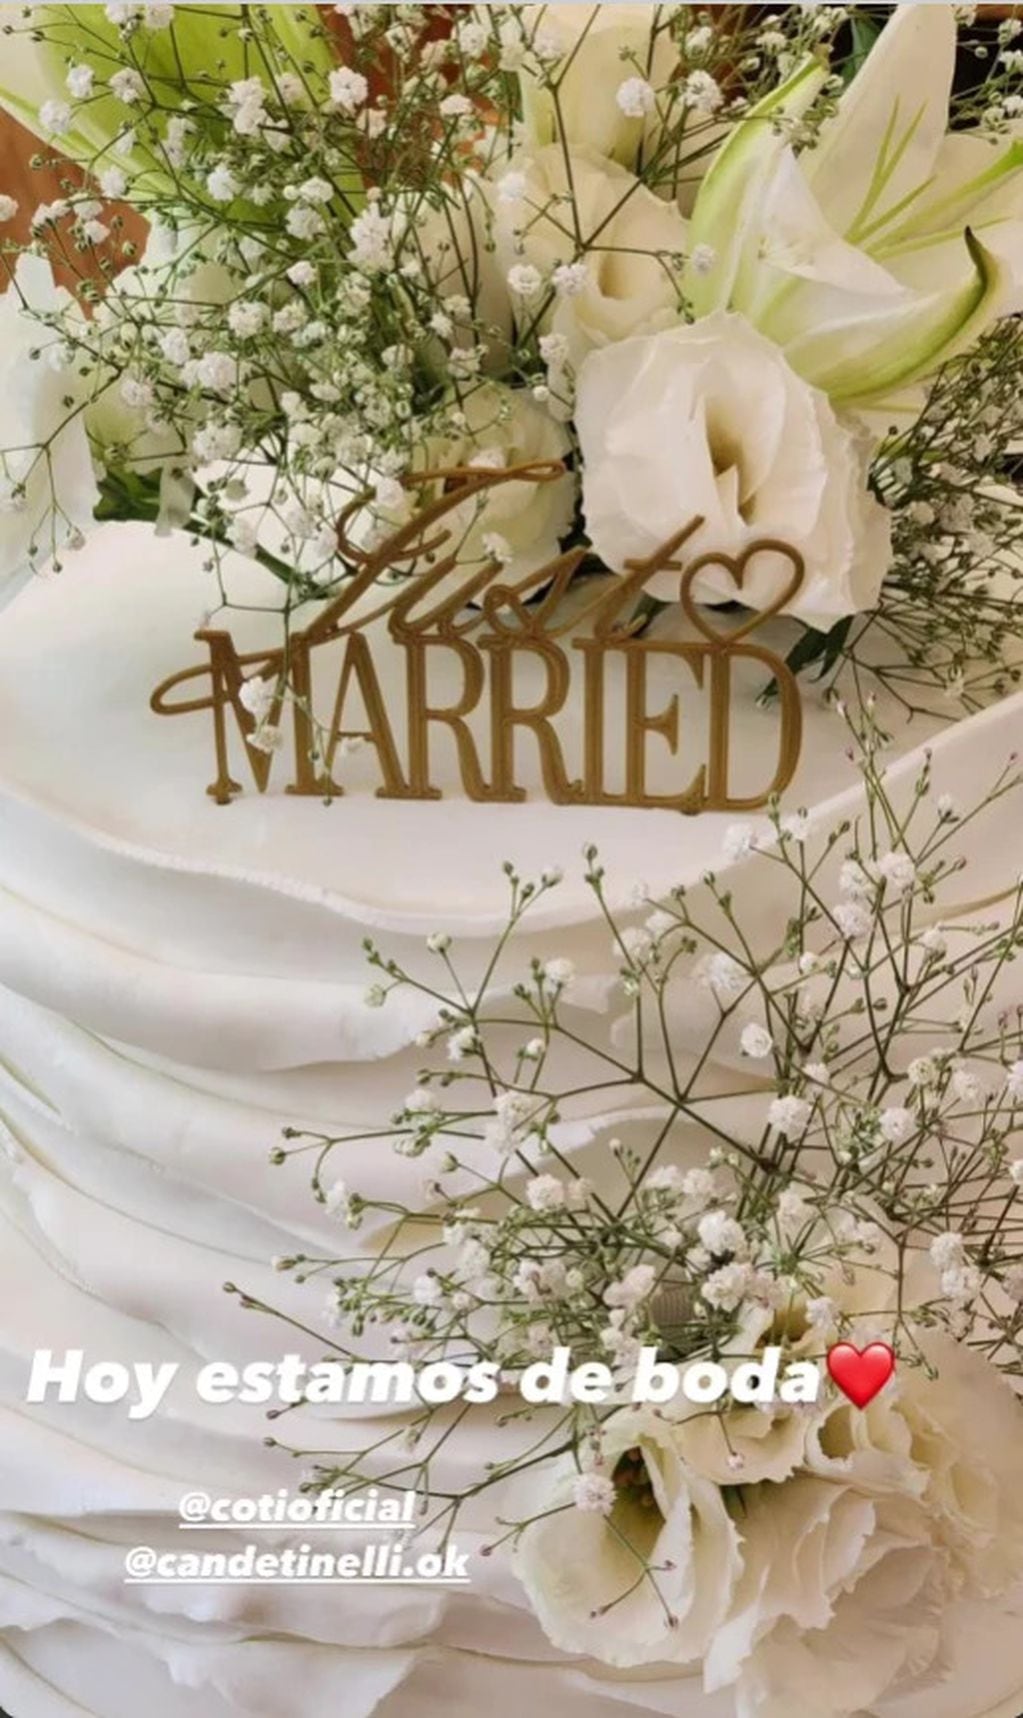 La torta del casamiento de Cande Tinelli fue hecha por Maru Botana